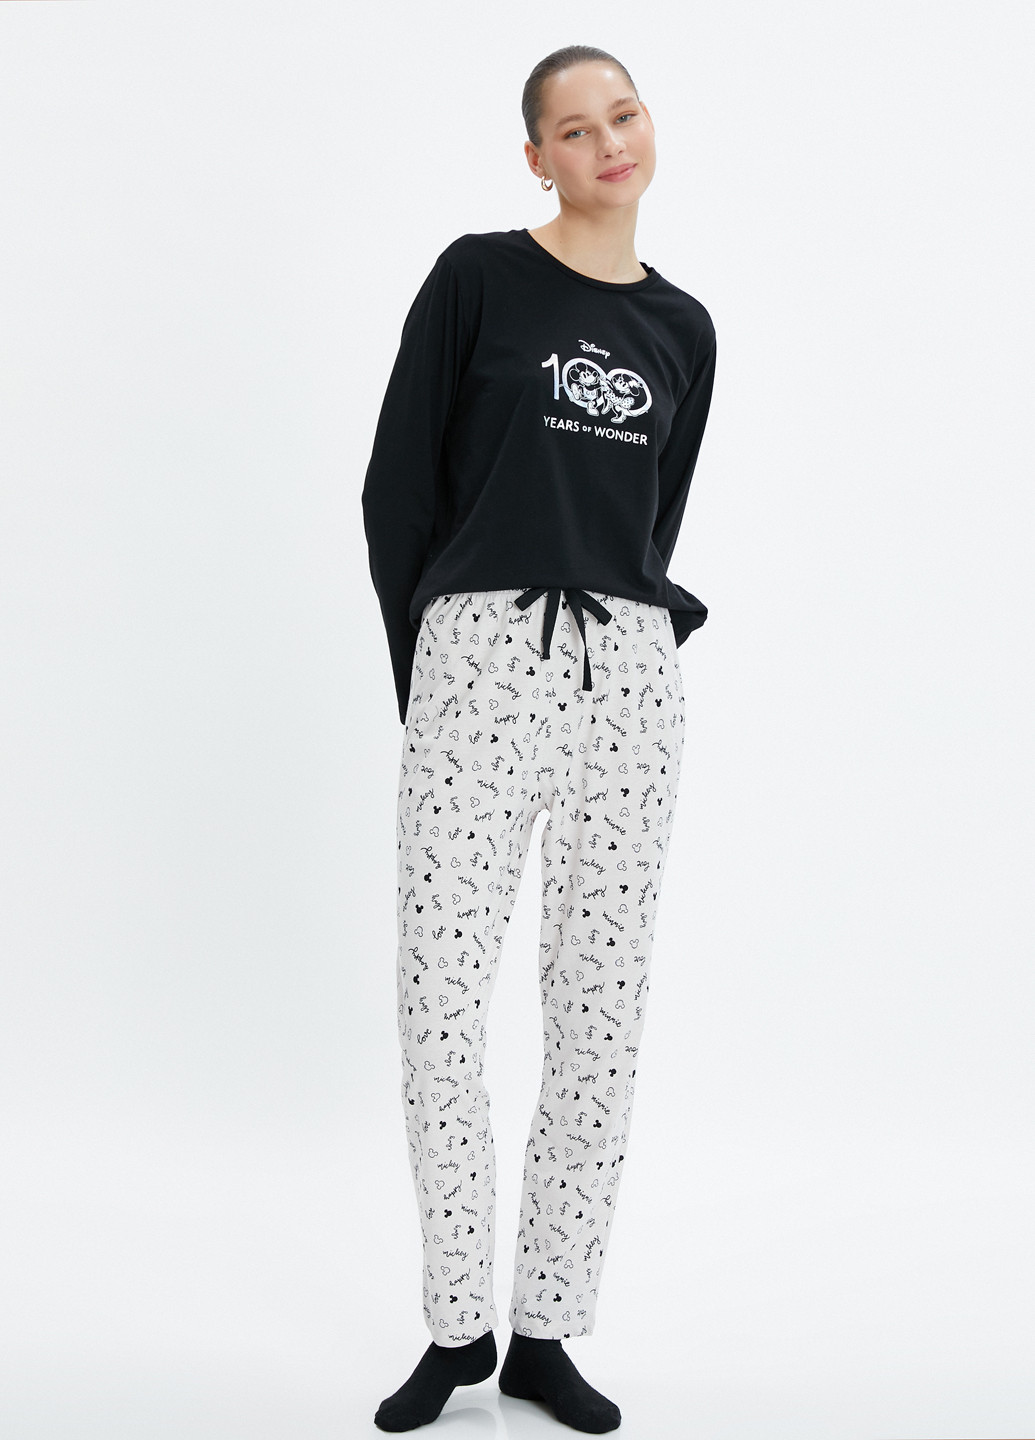 Черно-белая всесезон пижама (лонгслив, брюки) лонгслив + брюки KOTON